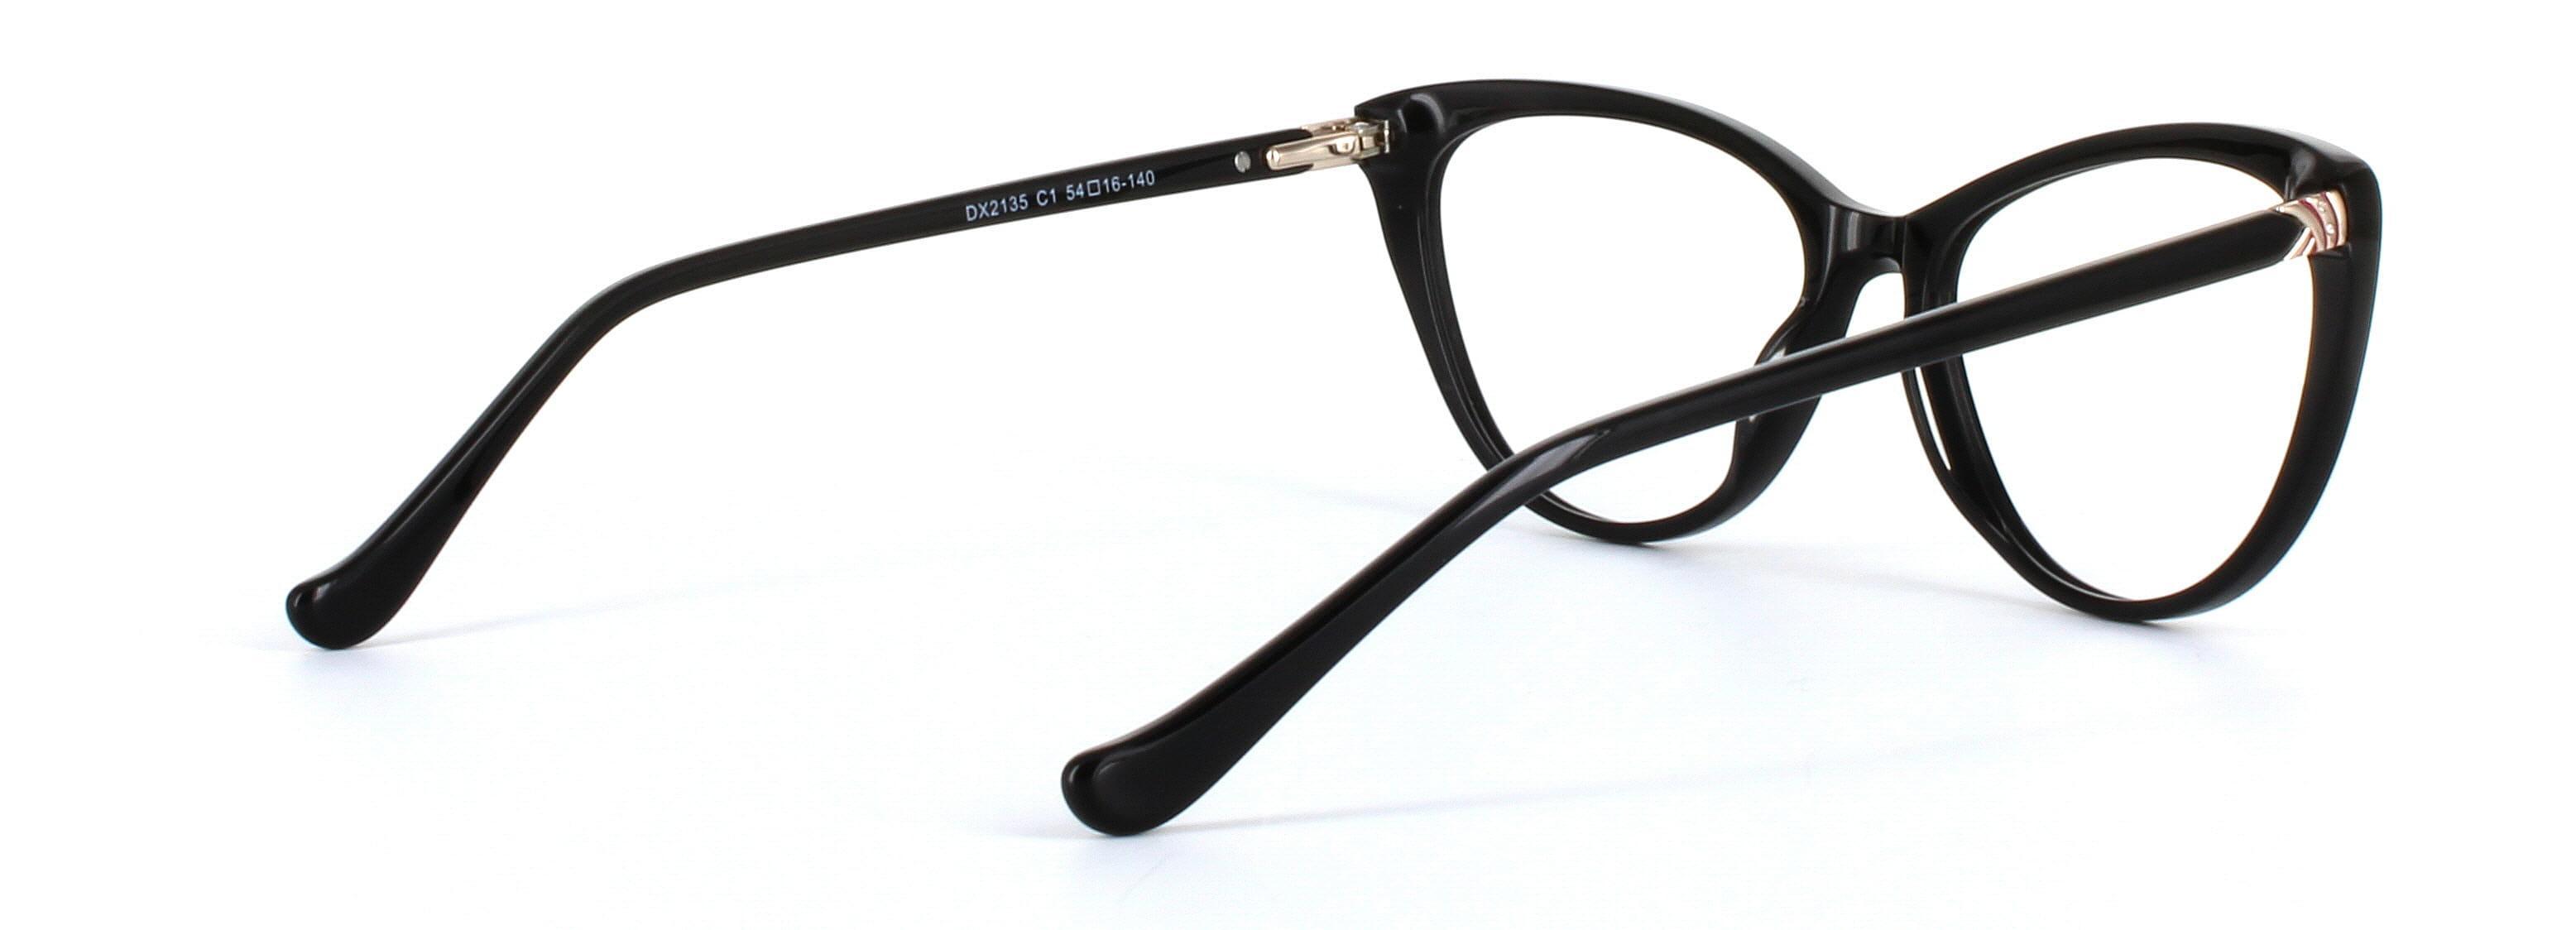 Lydia Black Full Rim Cat Eye Acetate Glasses - Image View 4